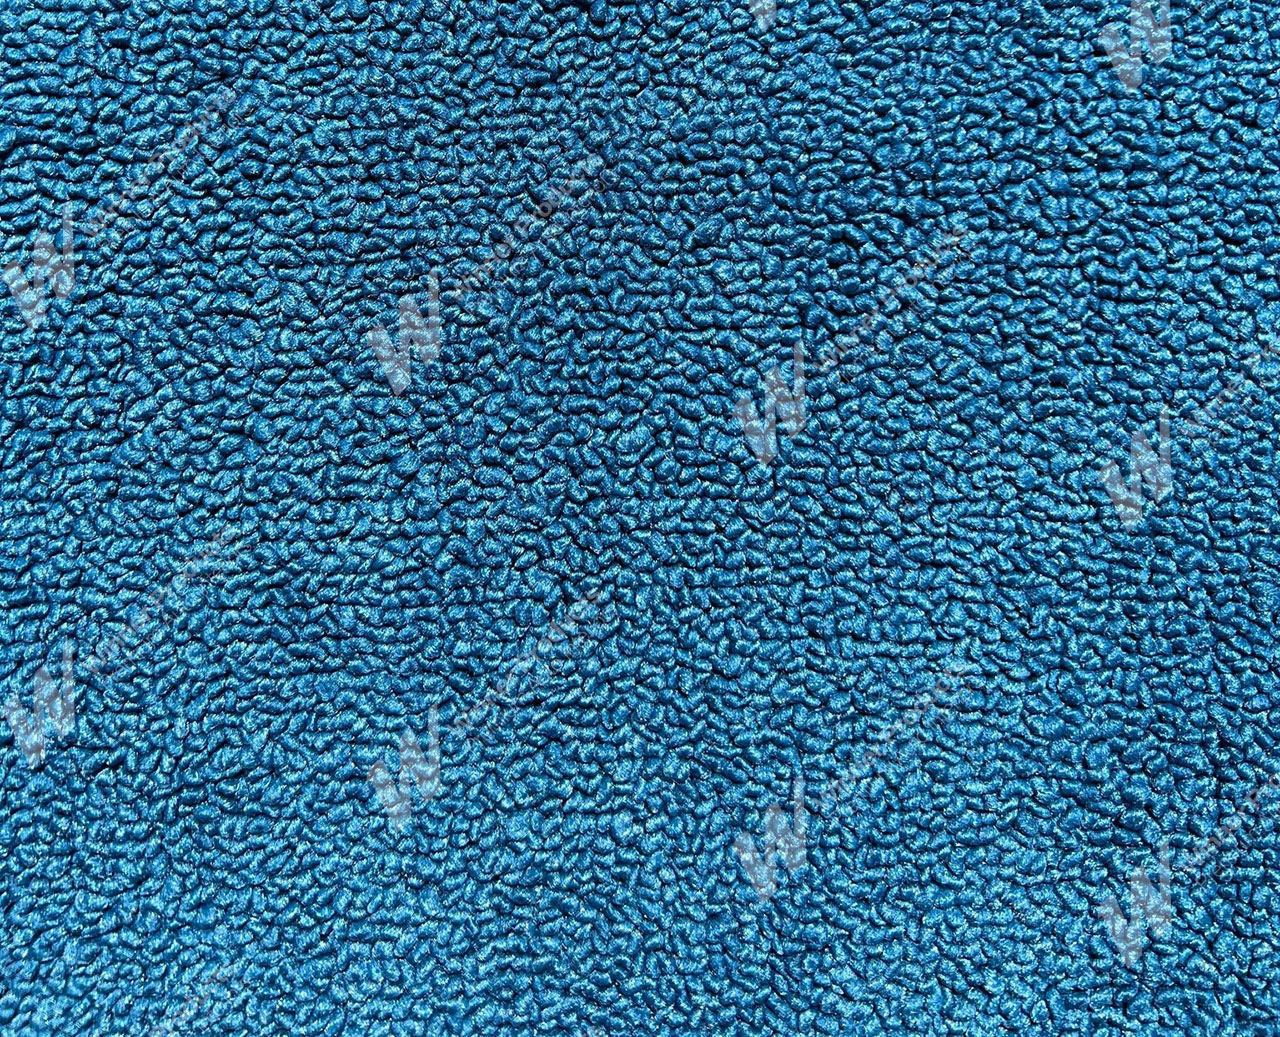 Holden Kingswood HT Kingswood Ute 14G Twilight Blue & Castillion Weave Carpet (Image 1 of 1)